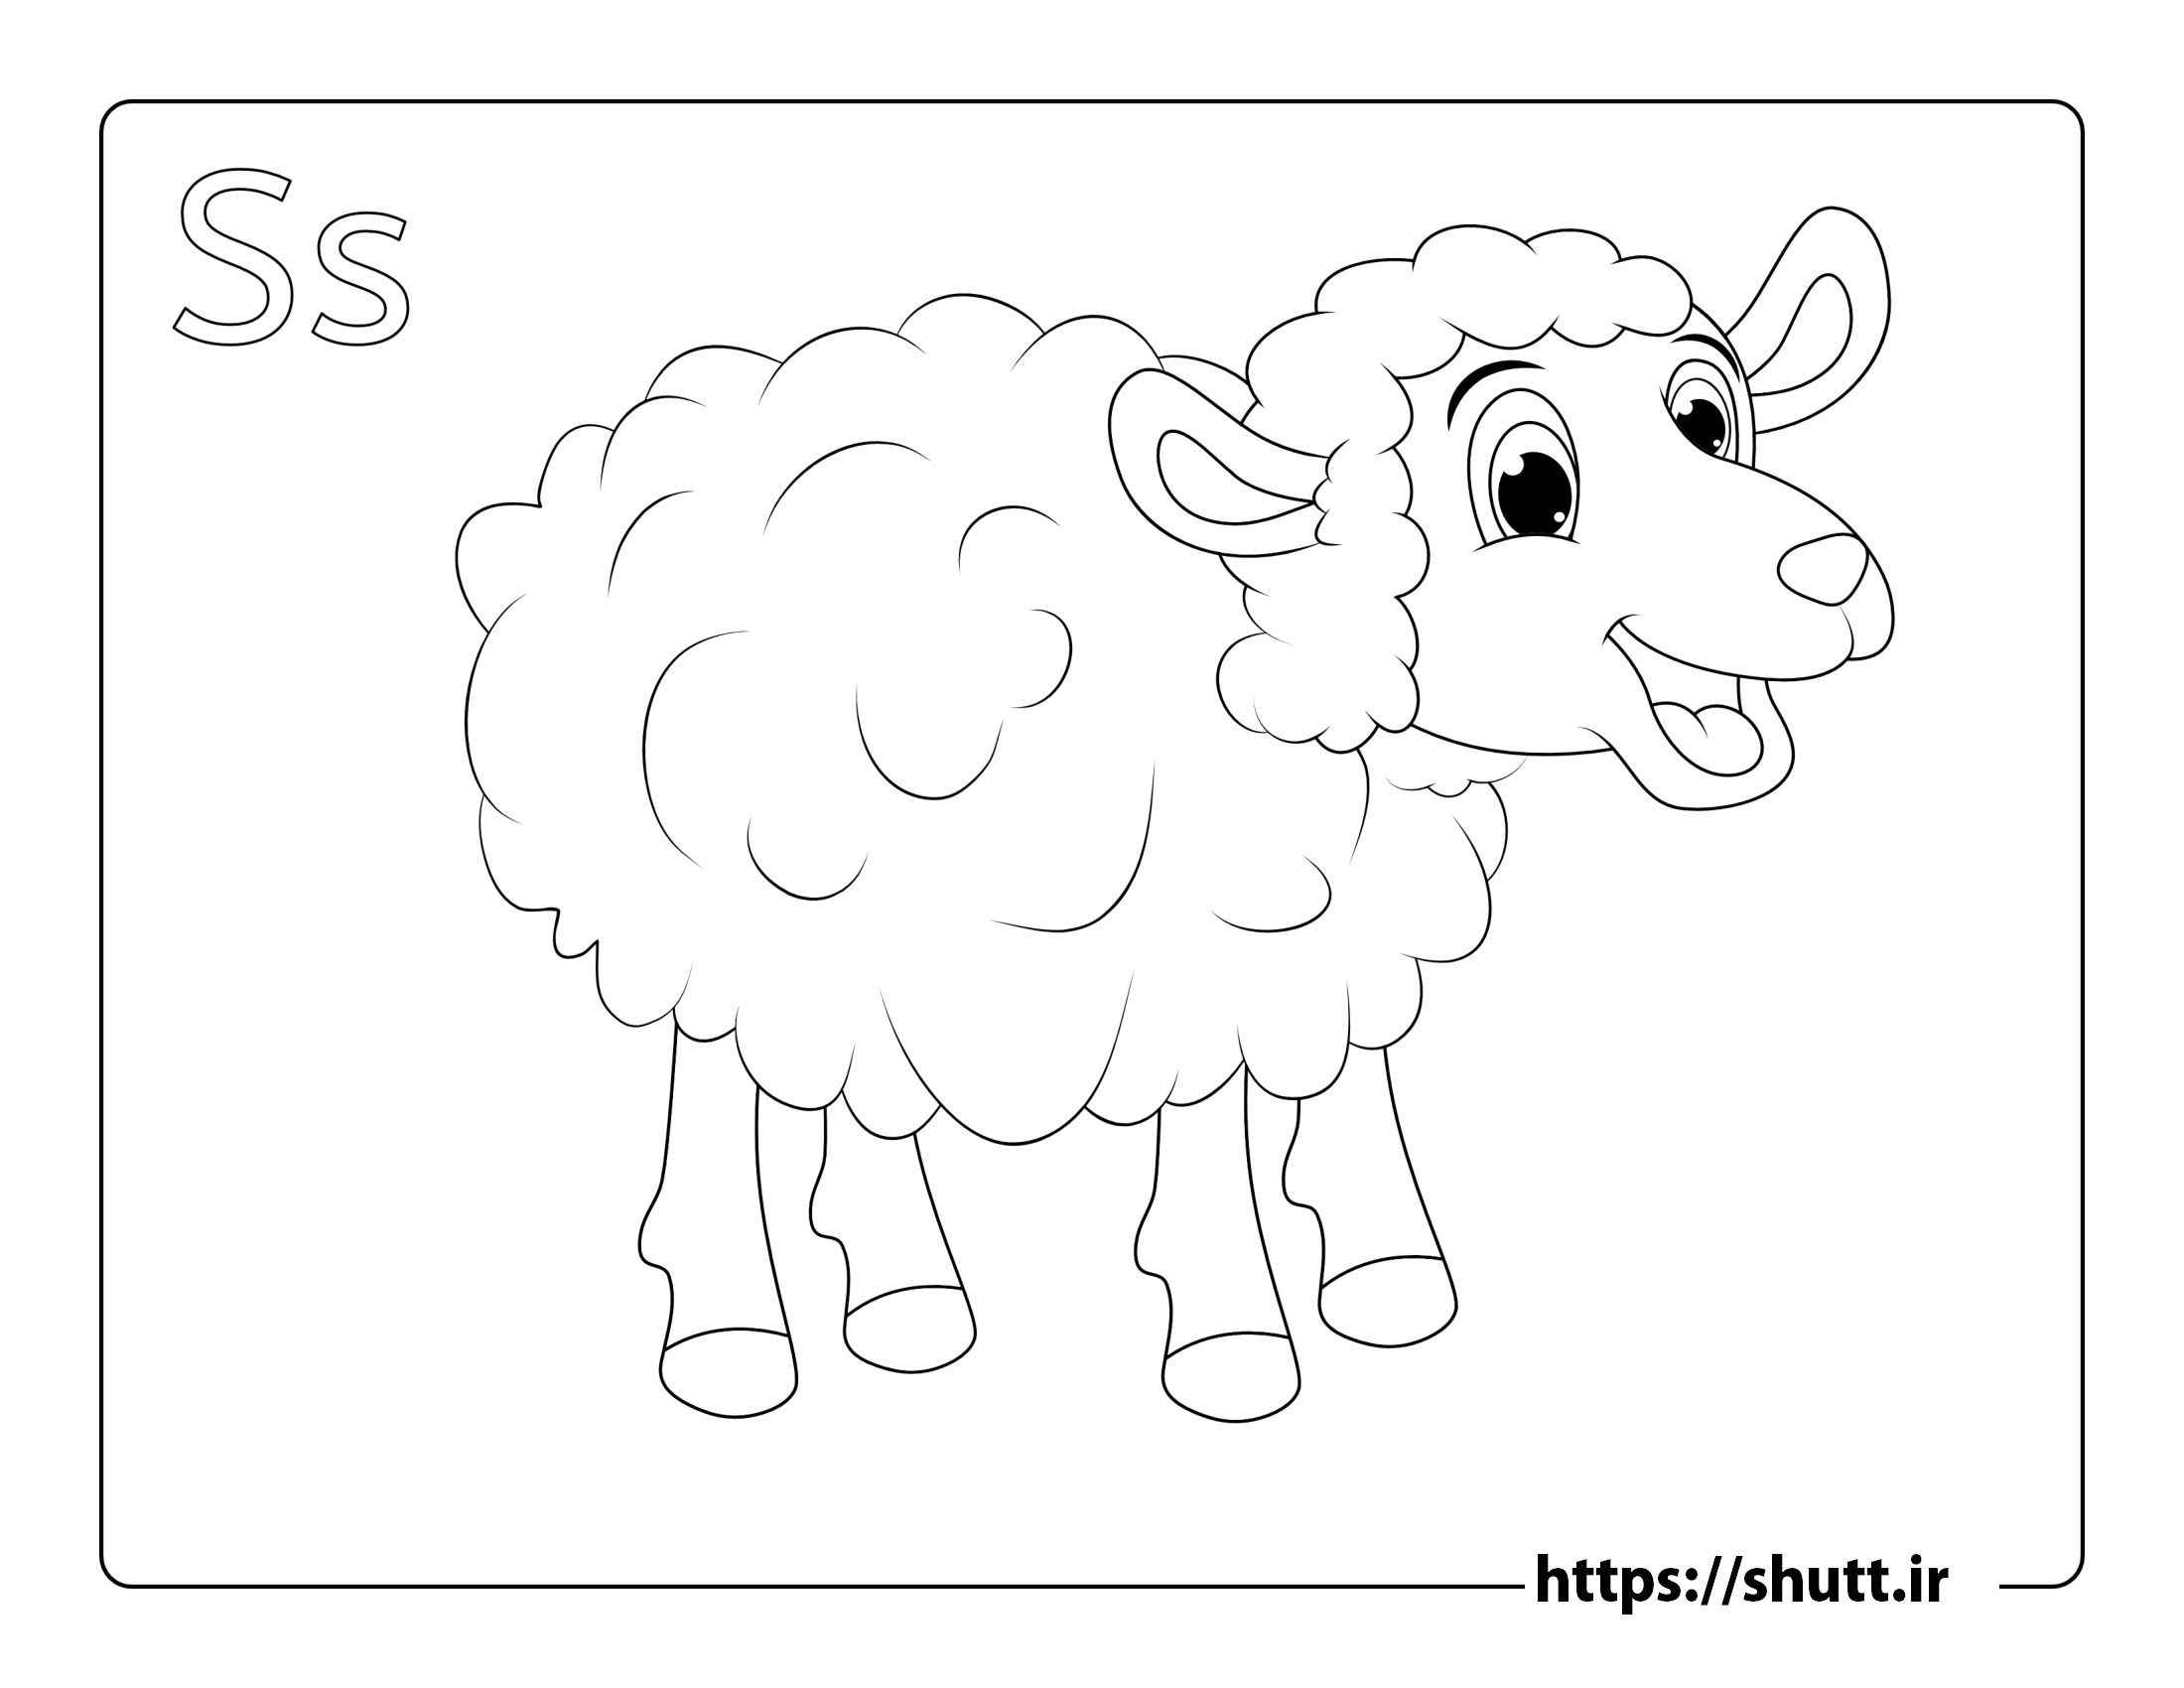 رنگ آمیزی نقاشی گوسفند